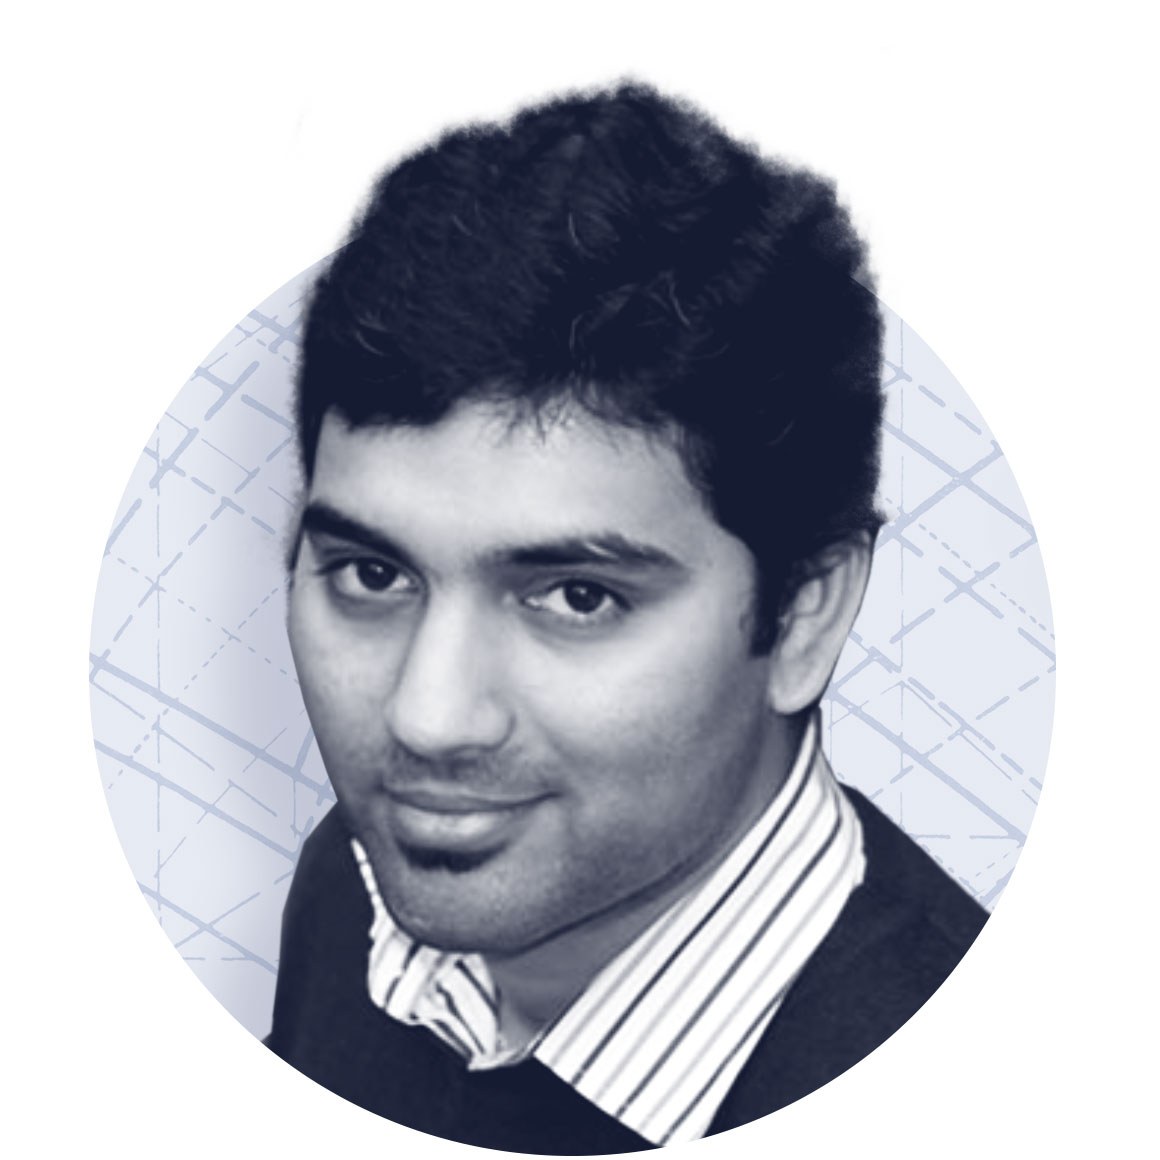 Sarath Kotamarthi – Quant analyst